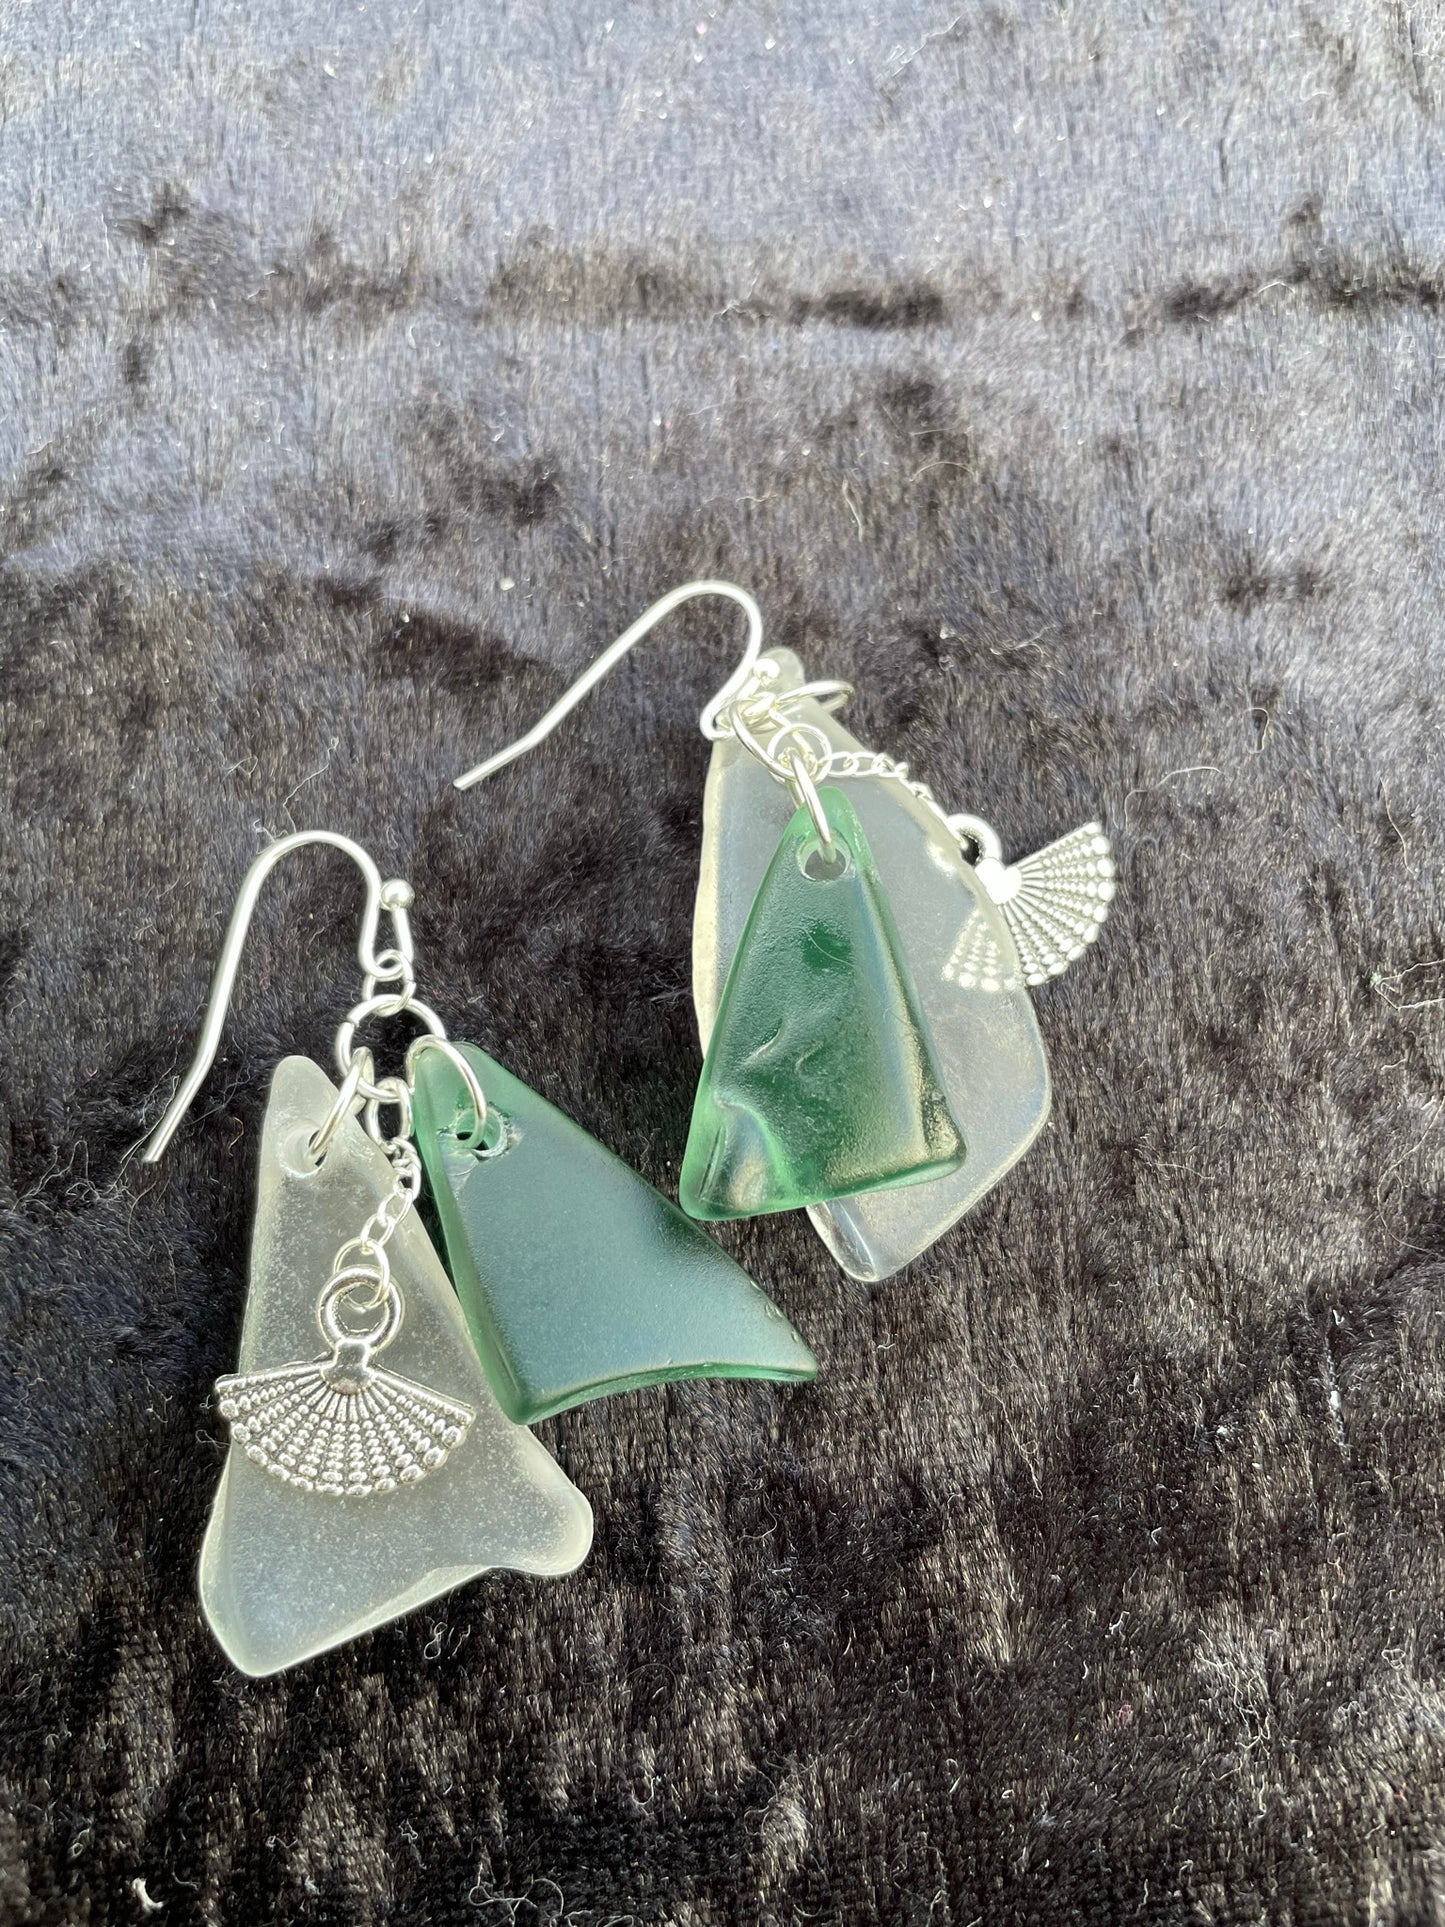 Green & white Seaglass drop earrings with fan